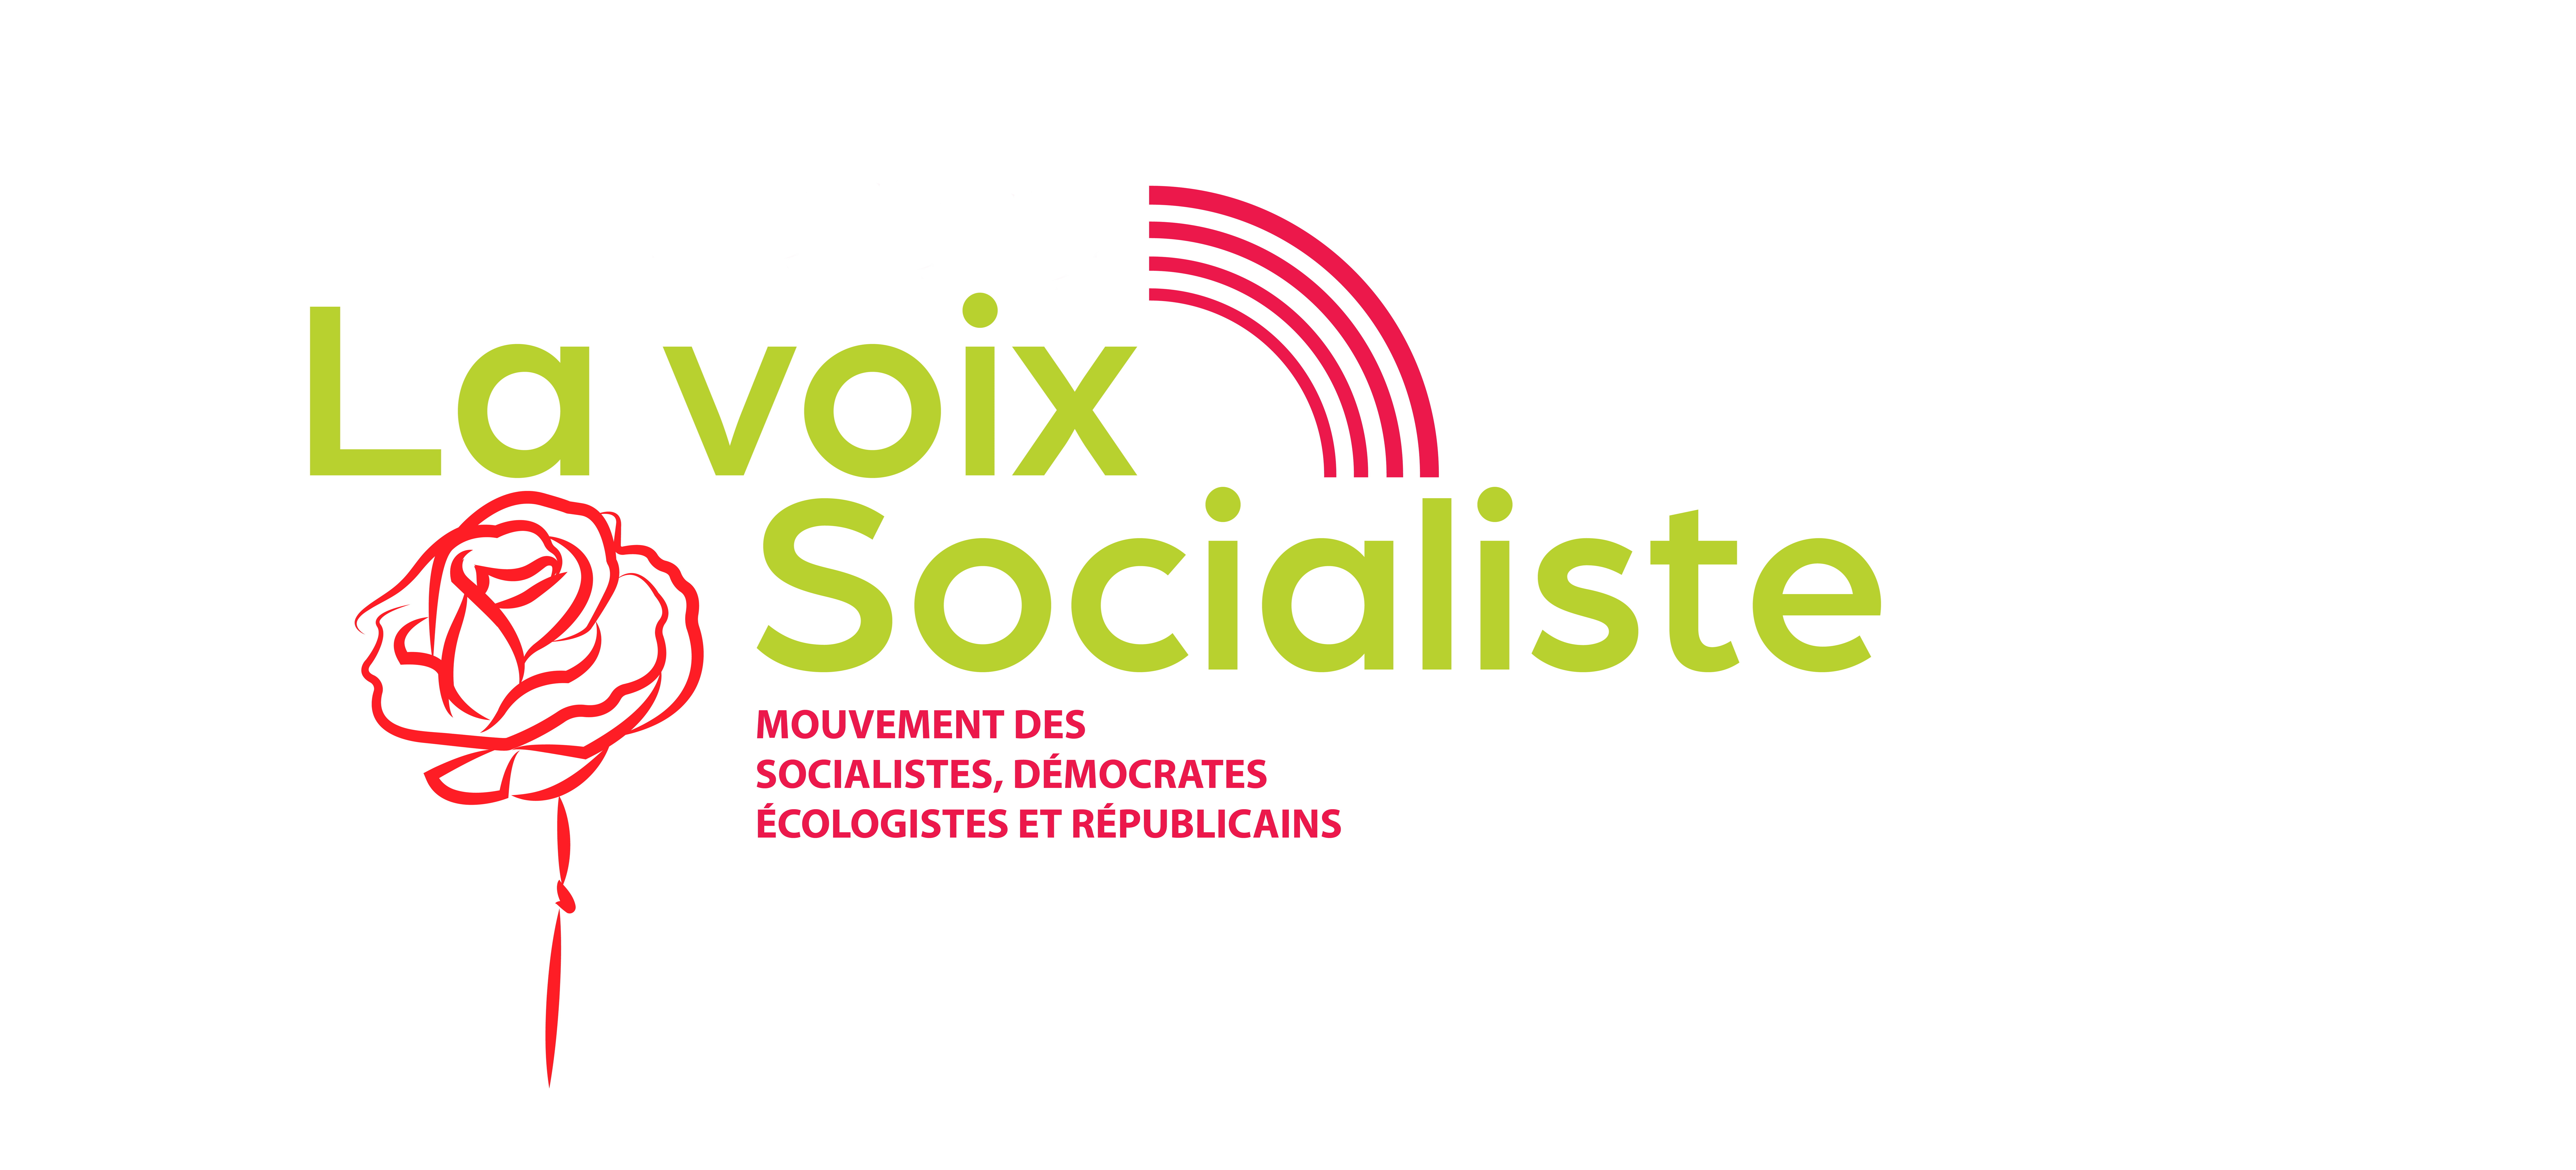 « LA VOIX SOCIALISTE » vous invite à rejoindre ses rangs.